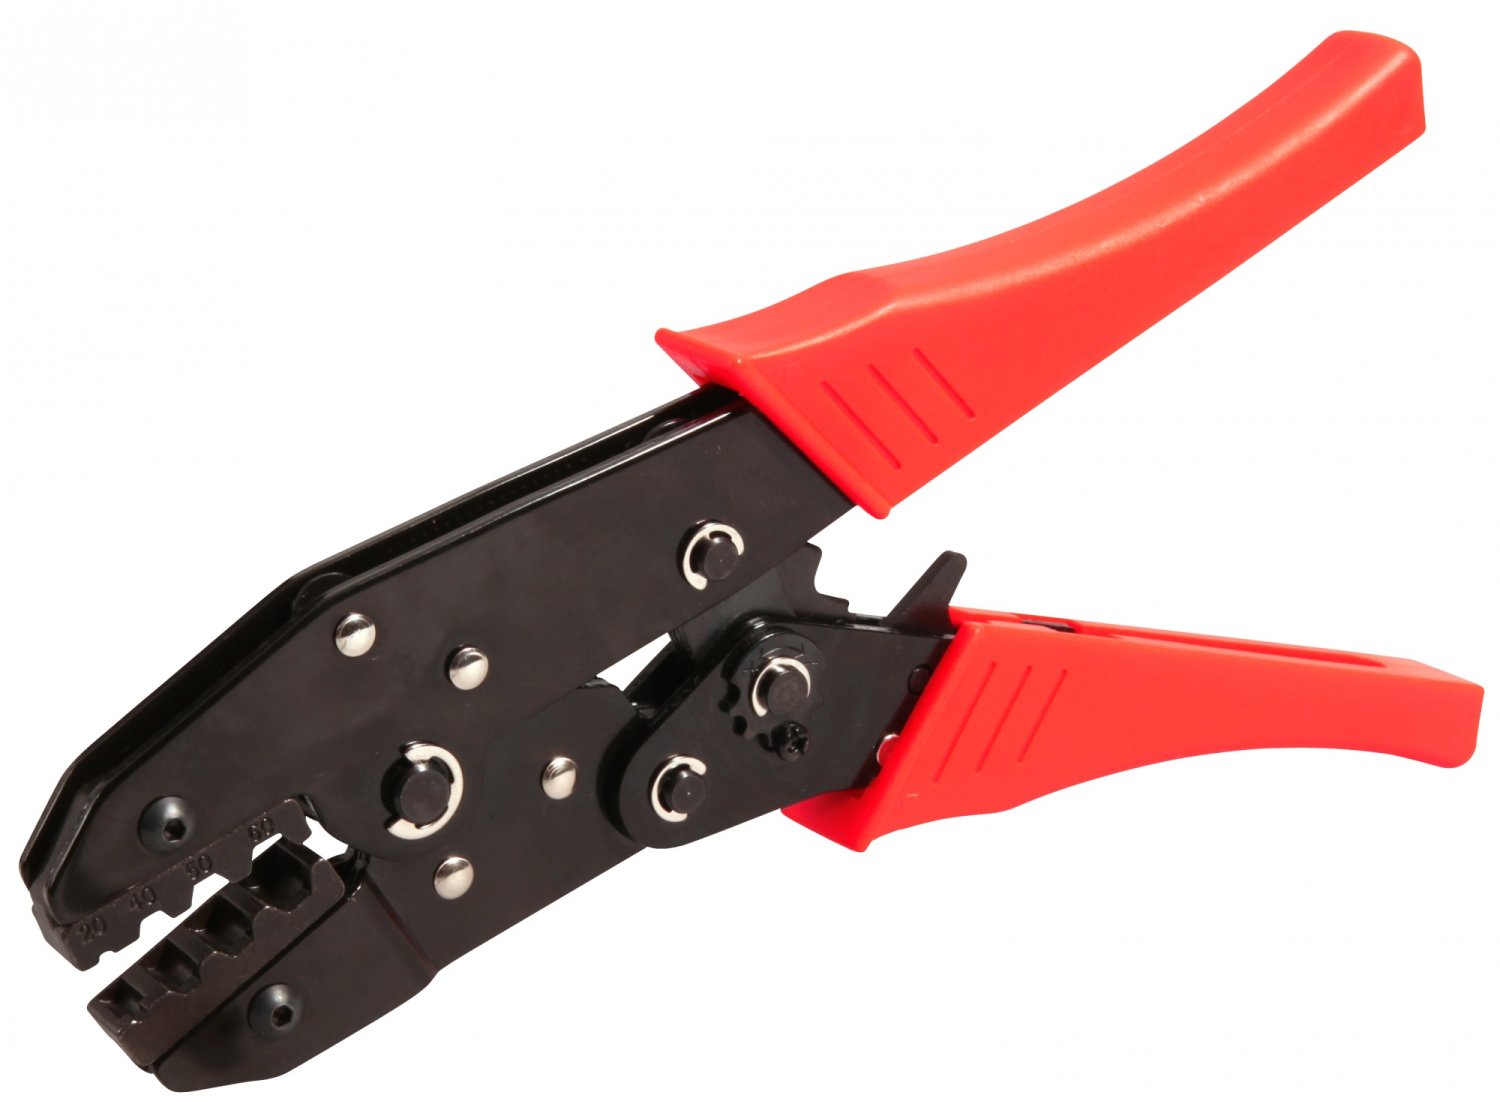 фото Велосипедный многофункциональный инструмент elvedes для обжимания и троса и рубашки, красный/черный, 2009019